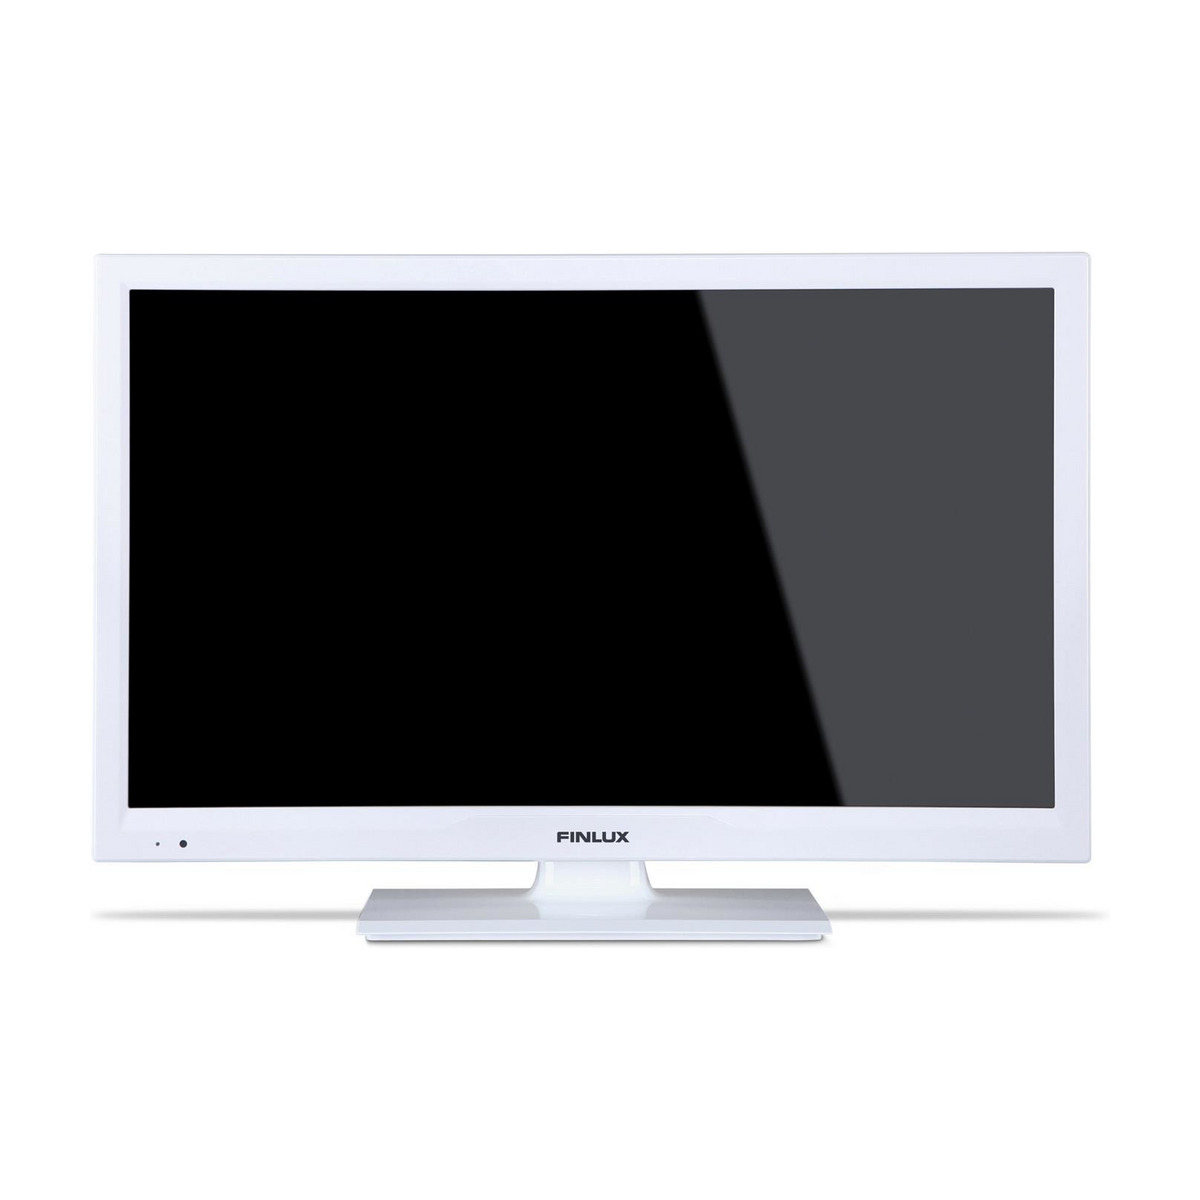 Fremskynde Igangværende eksekverbar FINLUX FIN22DVDWH 22" LED TV MED DVD - Power.dk